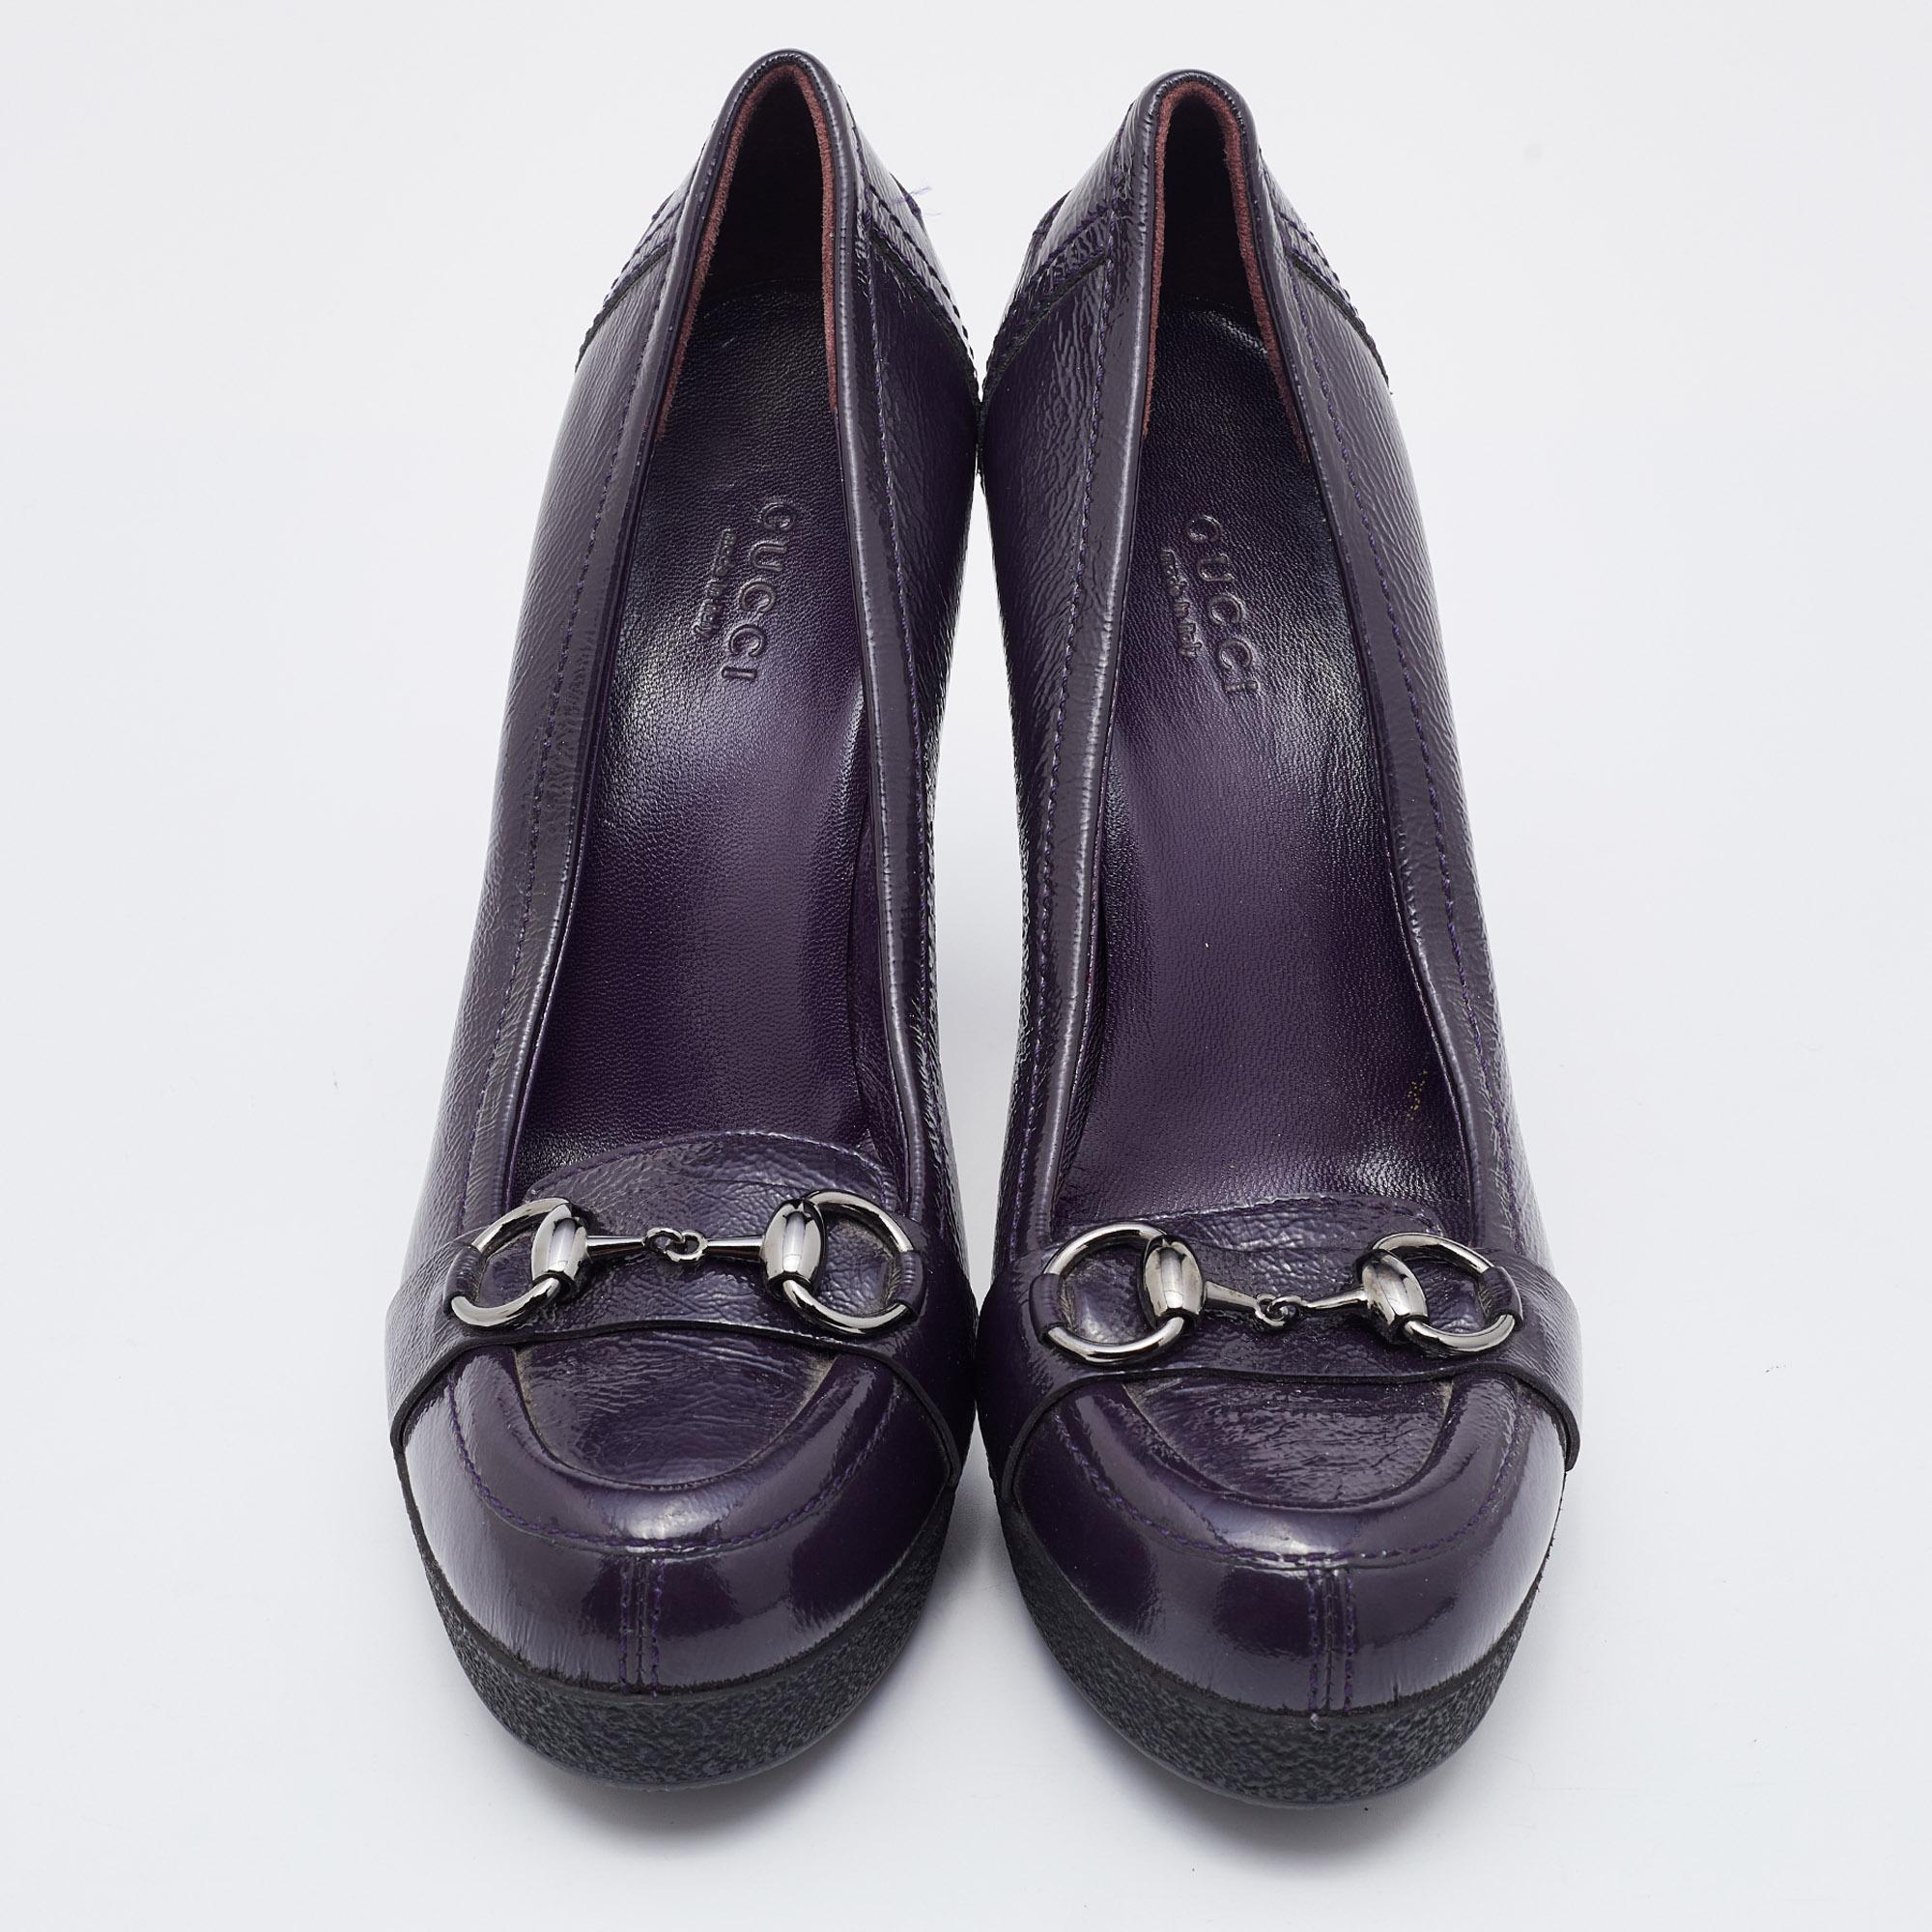 Gucci Purple Patent Leather Horsebit Platform Loafer Pumps Size 37.5 1